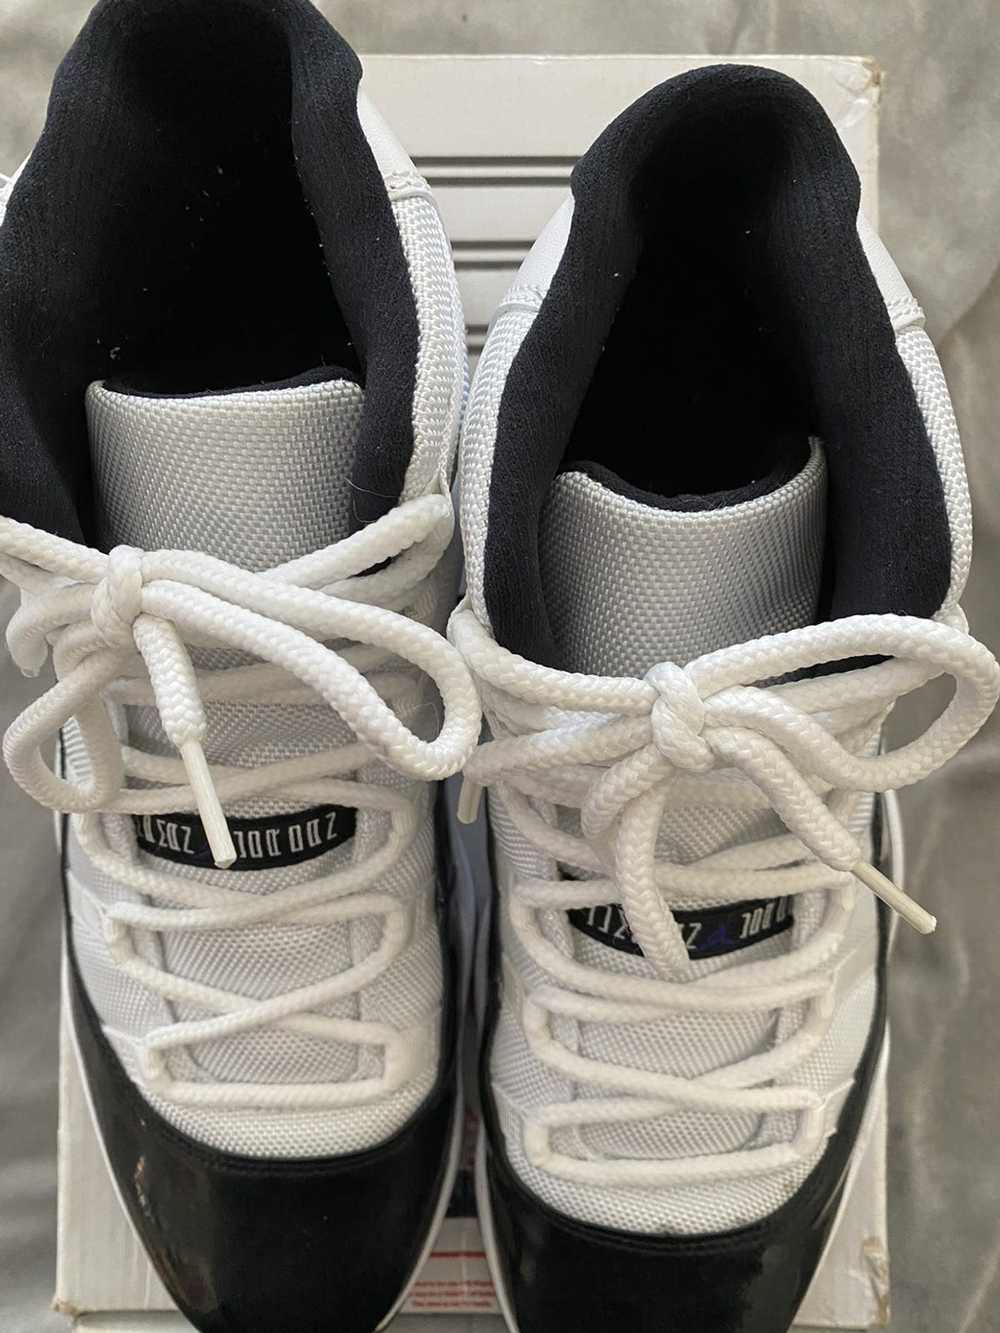 Jordan Brand × Nike Jordan 11 concord (2011) - image 2